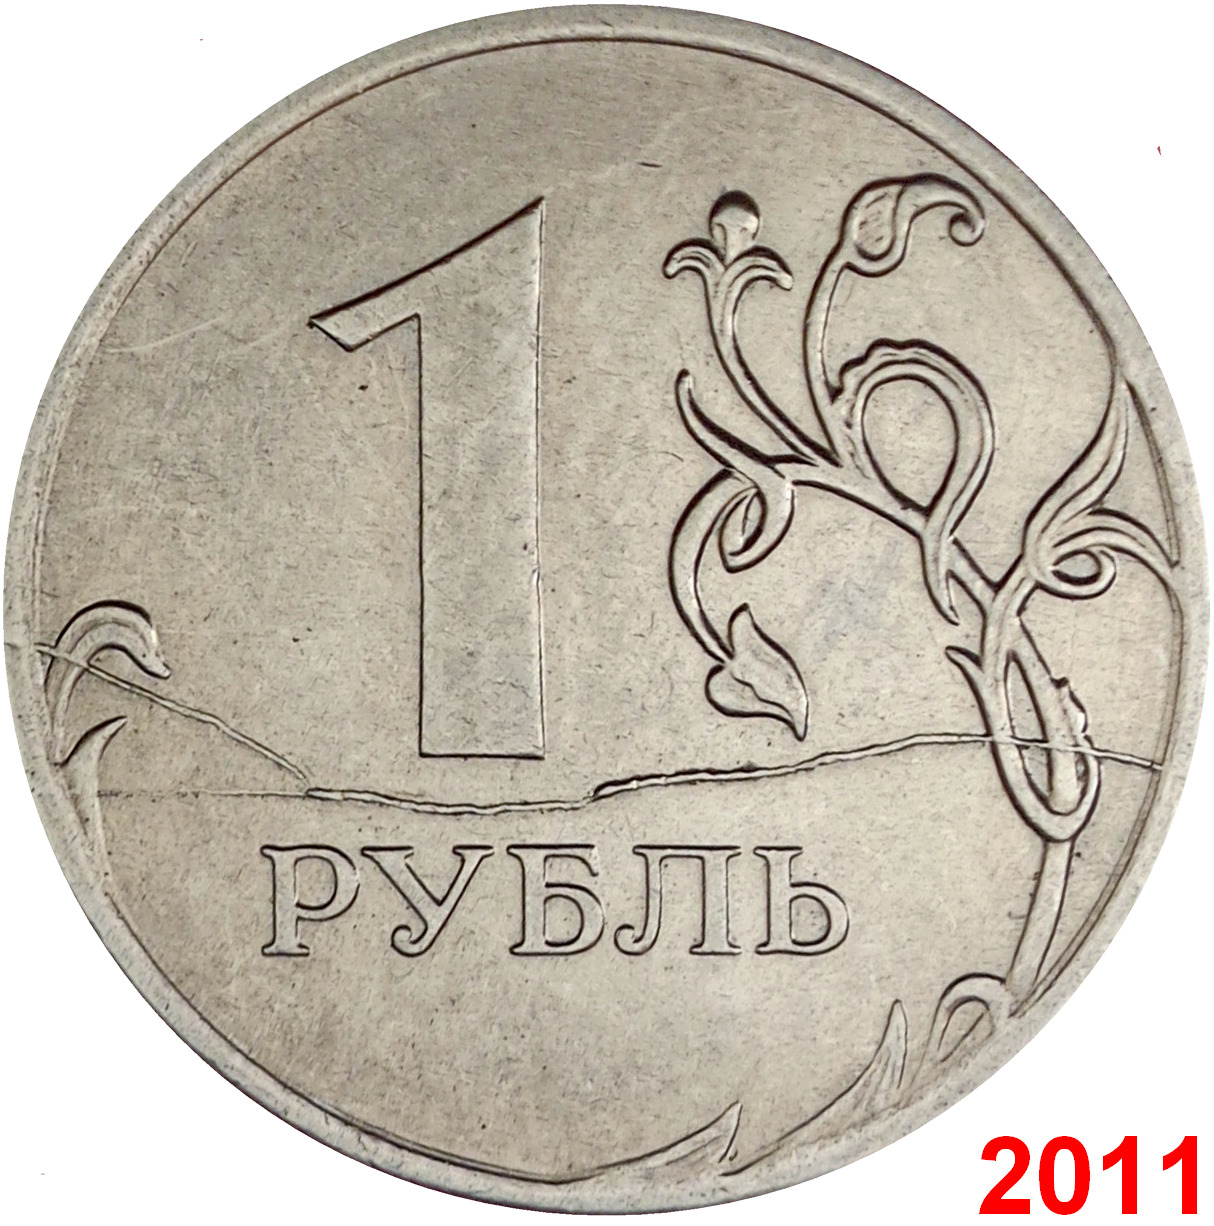 Рубли 2015 года